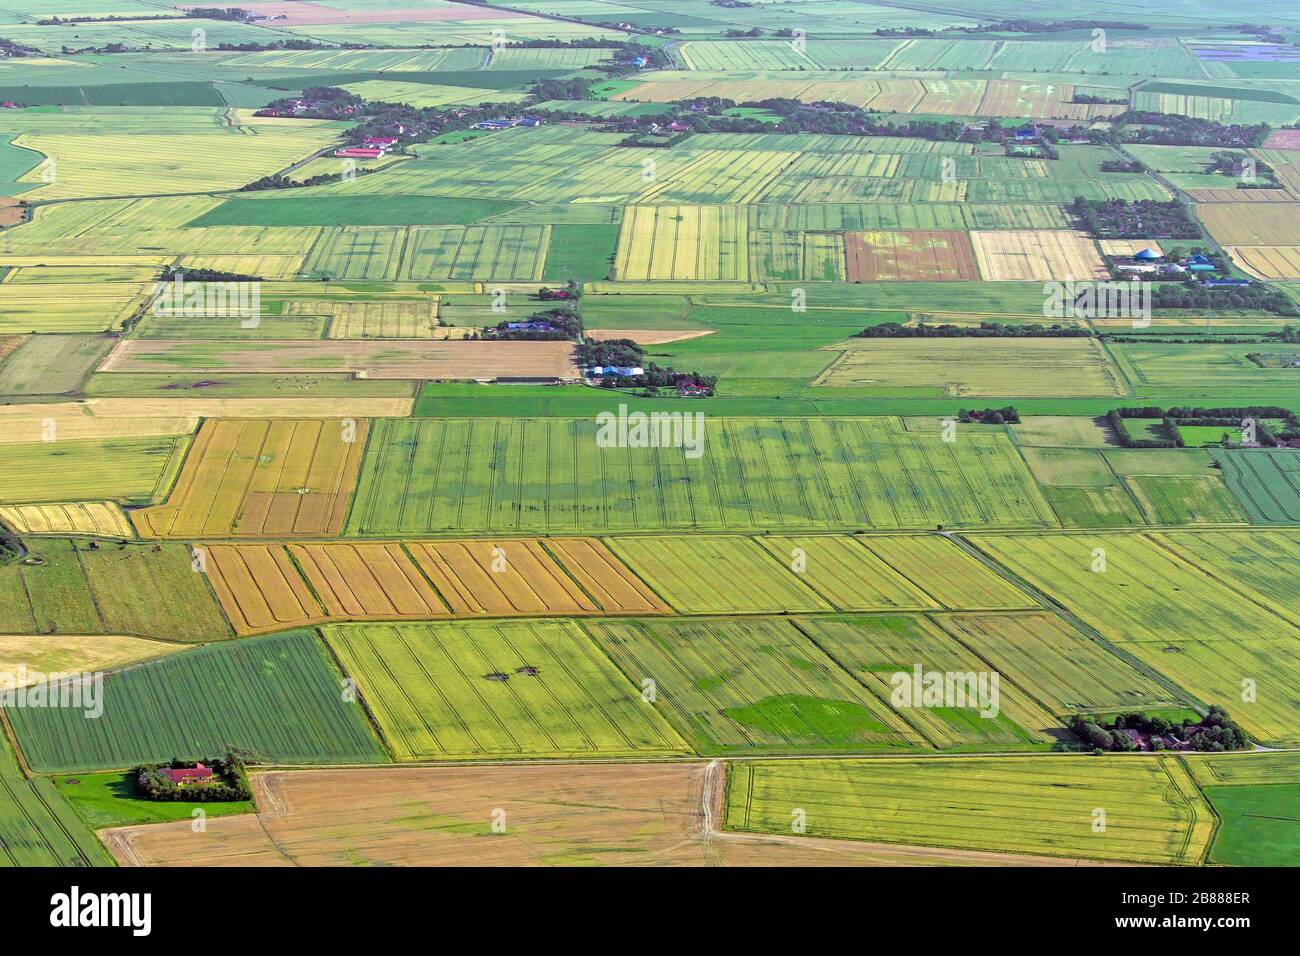 Vista aerea sui terreni agricoli che mostra i percorsi dei trattori in parcelle agricole / appezzamenti di terreno con colture di cereali e campi di grano / campi di mais in estate Foto Stock